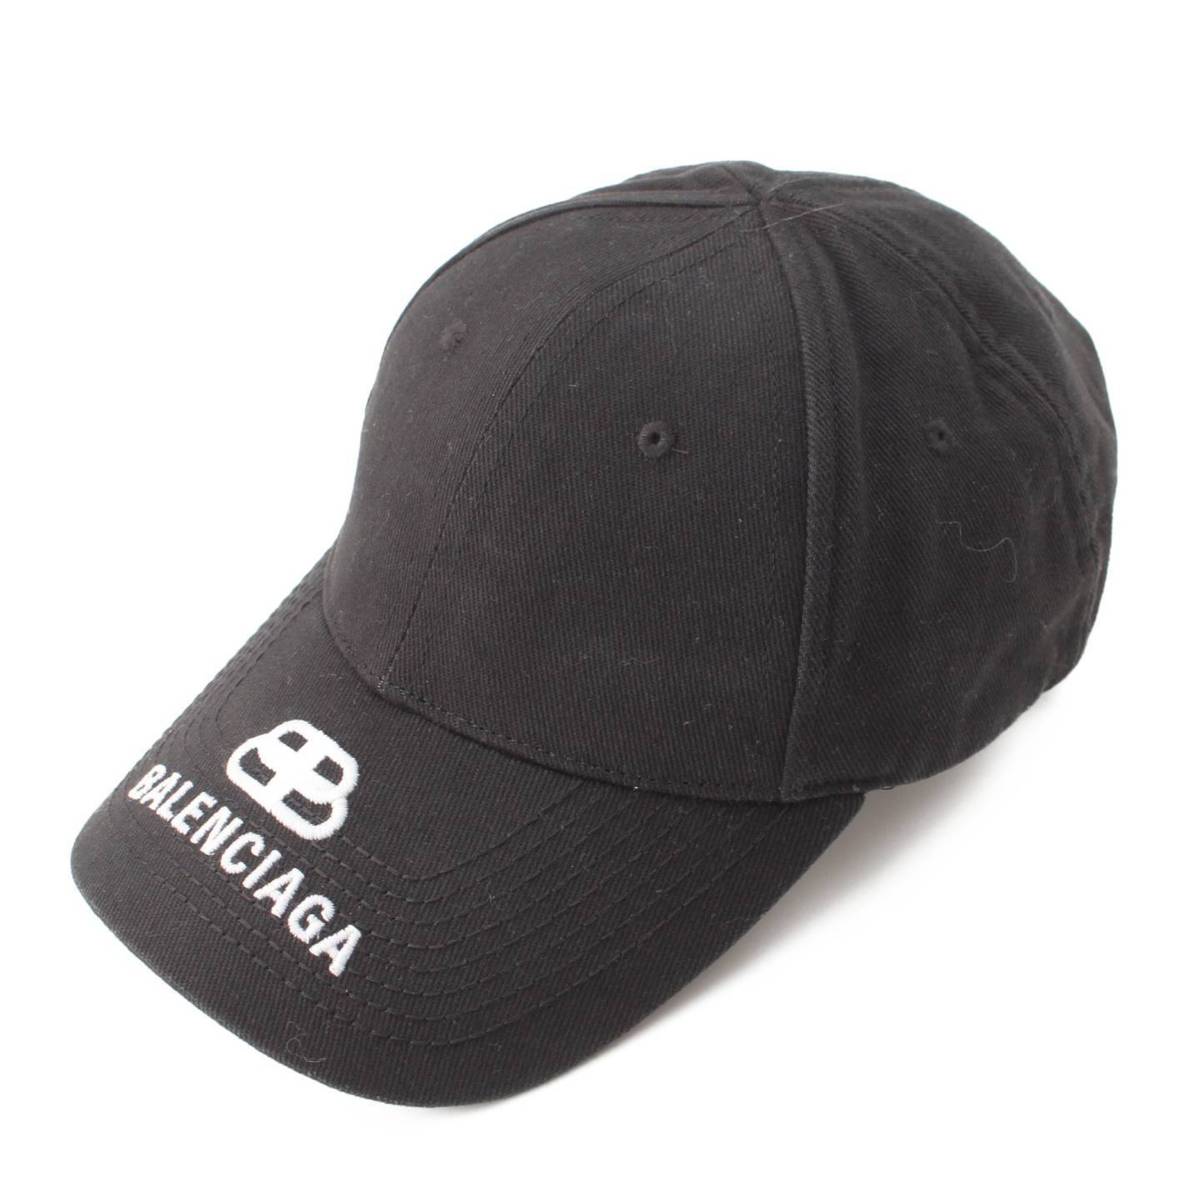 バレンシアガ(Balenciaga) ベースボールキャップ 帽子 ブラック L58 